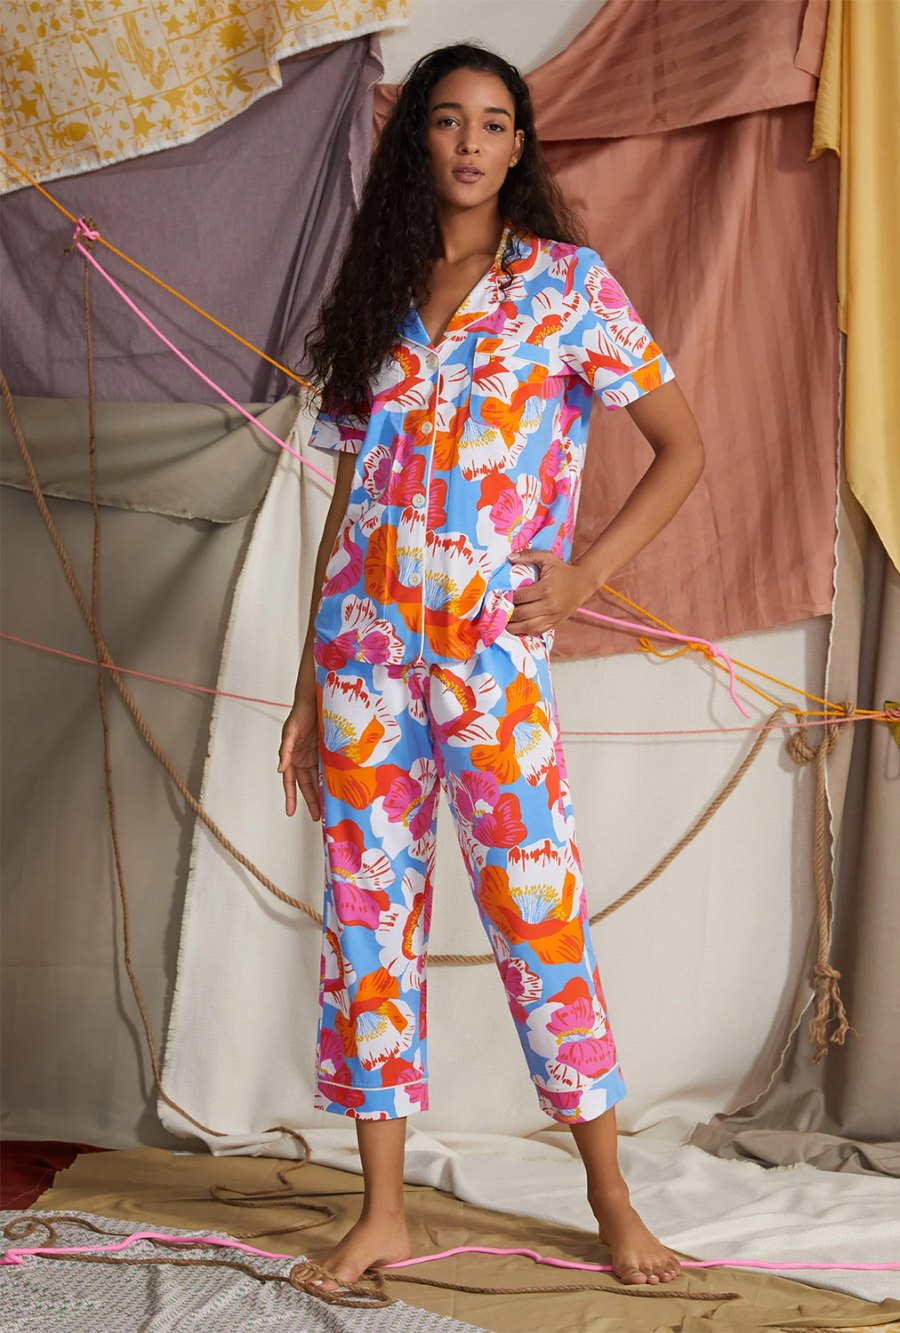 Buzz-O-Meter Mindy Kaling's Favorite Pajamas and More